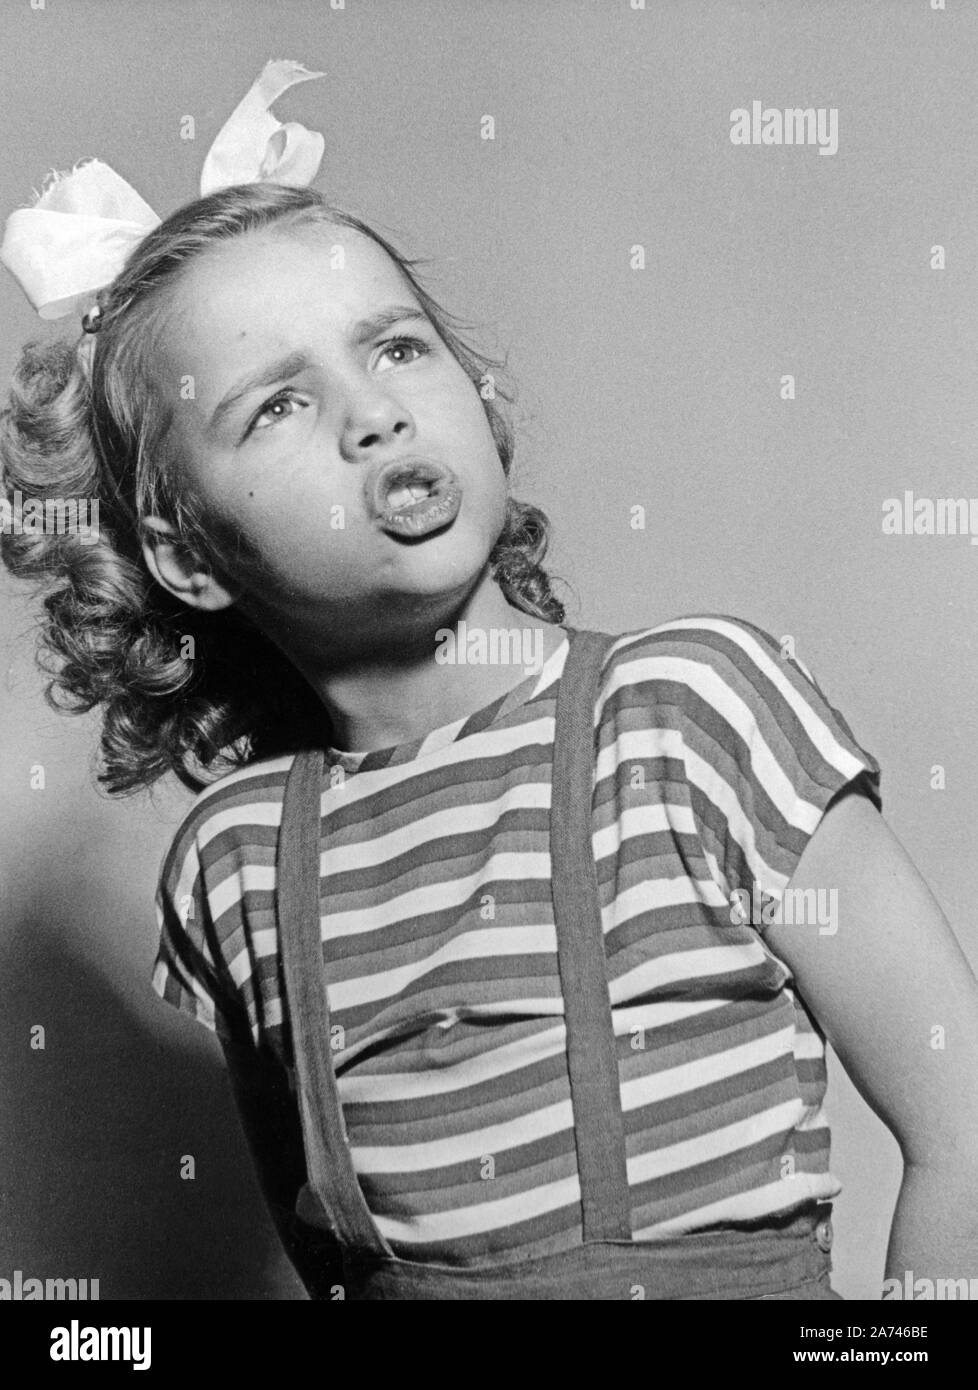 Cornelia Conny Froboess singt, Stand ersten Hit 'Pack die Badehose ein',  Deutschland 1951. Cornelia Conny Froboess mit ihrem ersten Song "Pack die Badehose  ein", Deutschland 1951 Stockfotografie - Alamy